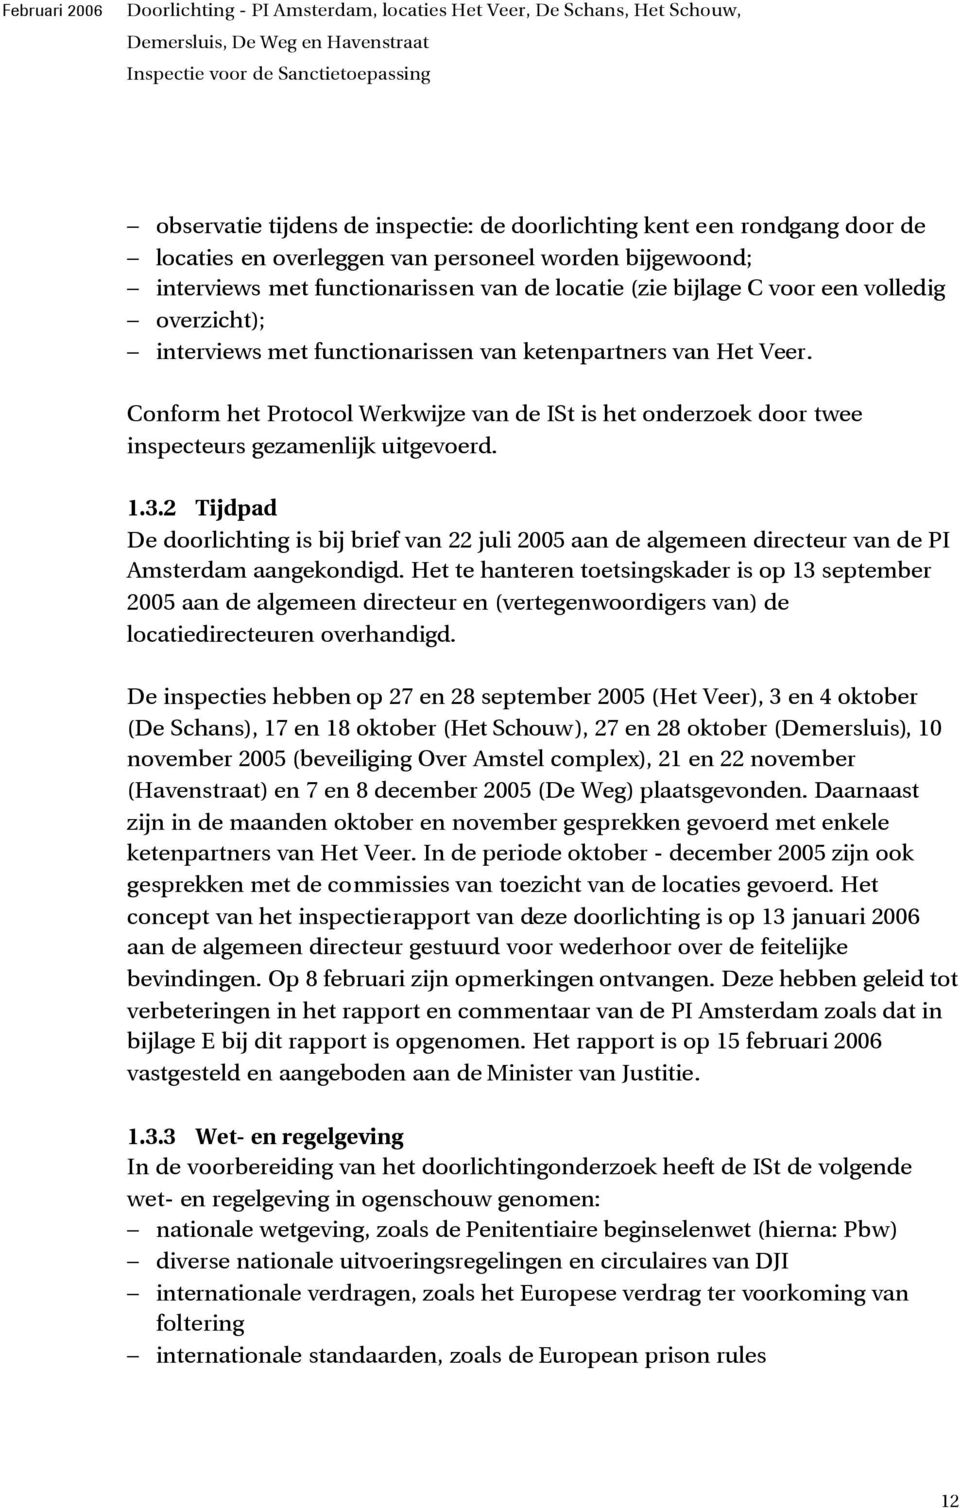 2 Tijdpad De doorlichting is bij brief van 22 juli 2005 aan de algemeen directeur van de PI Amsterdam aangekondigd.